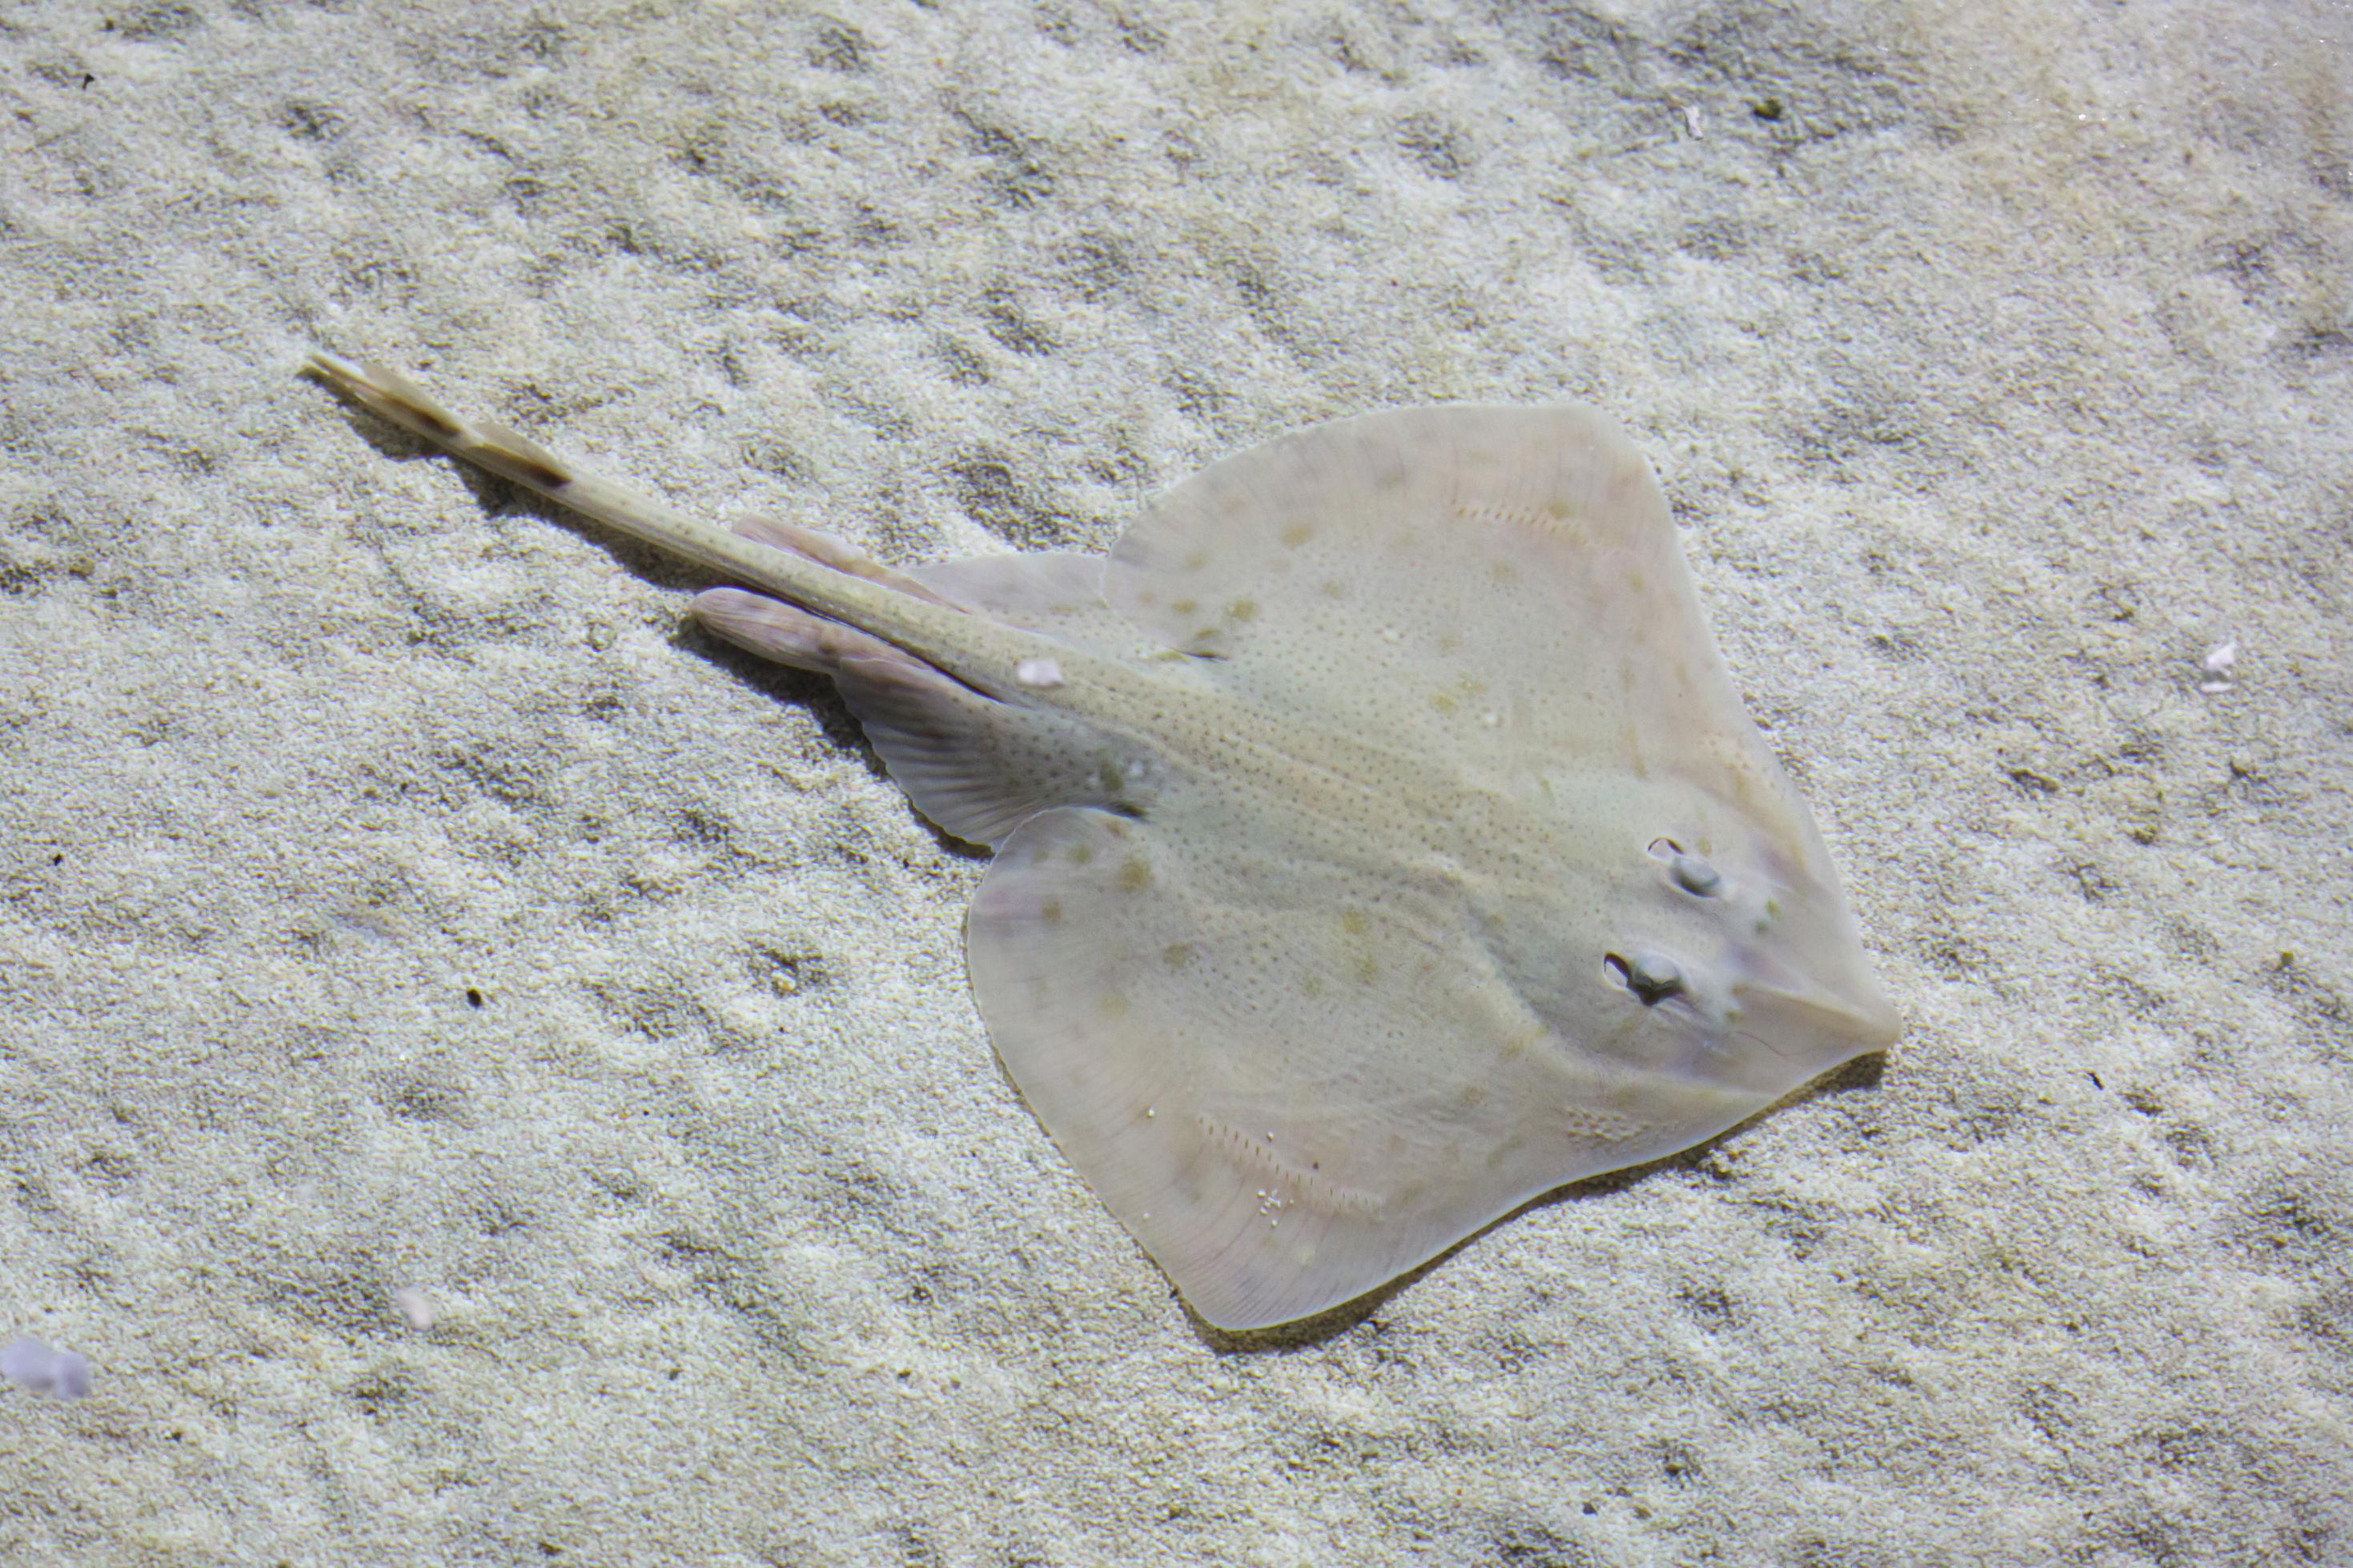 Unterwasserfoto eines Marmorrochens, der auf sandigem Untergrund ruht. Das Tier fügt sich farblich ein, ist hellgrau mit dunkleren Punkten gemustert.